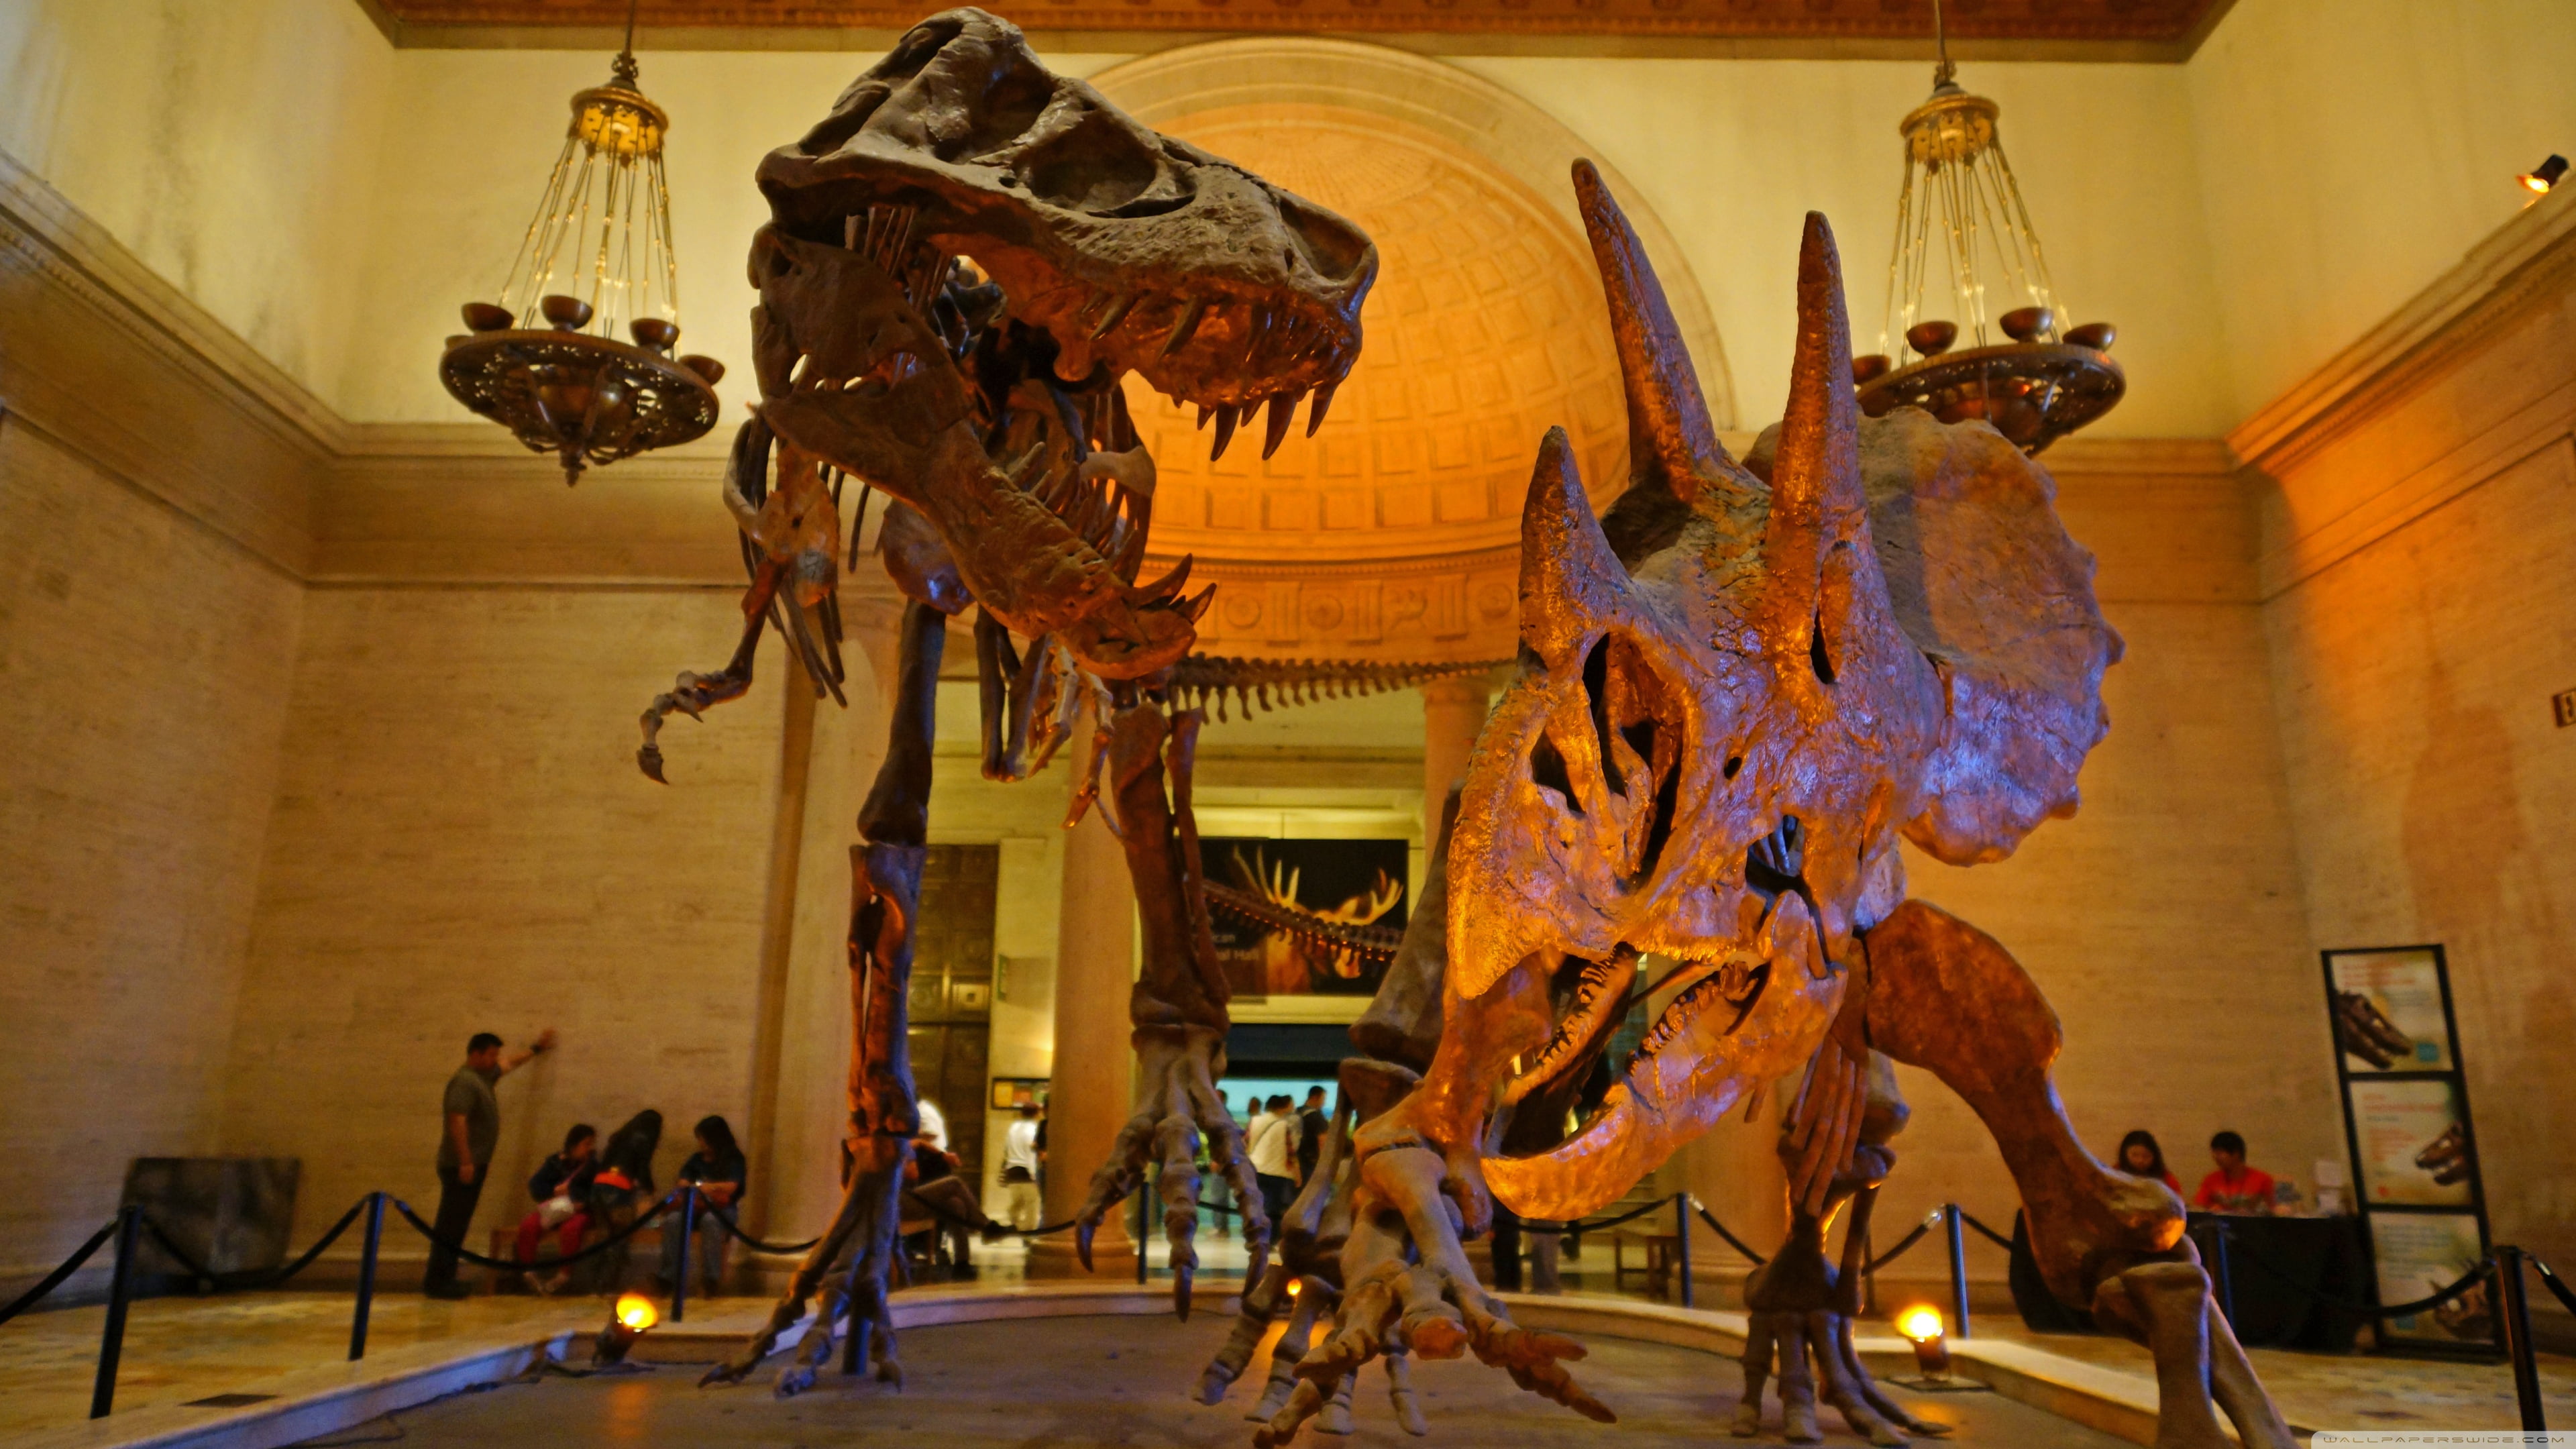 Tyrannosaurus rex, Triceratops, dinosaurs, skeleton, museum